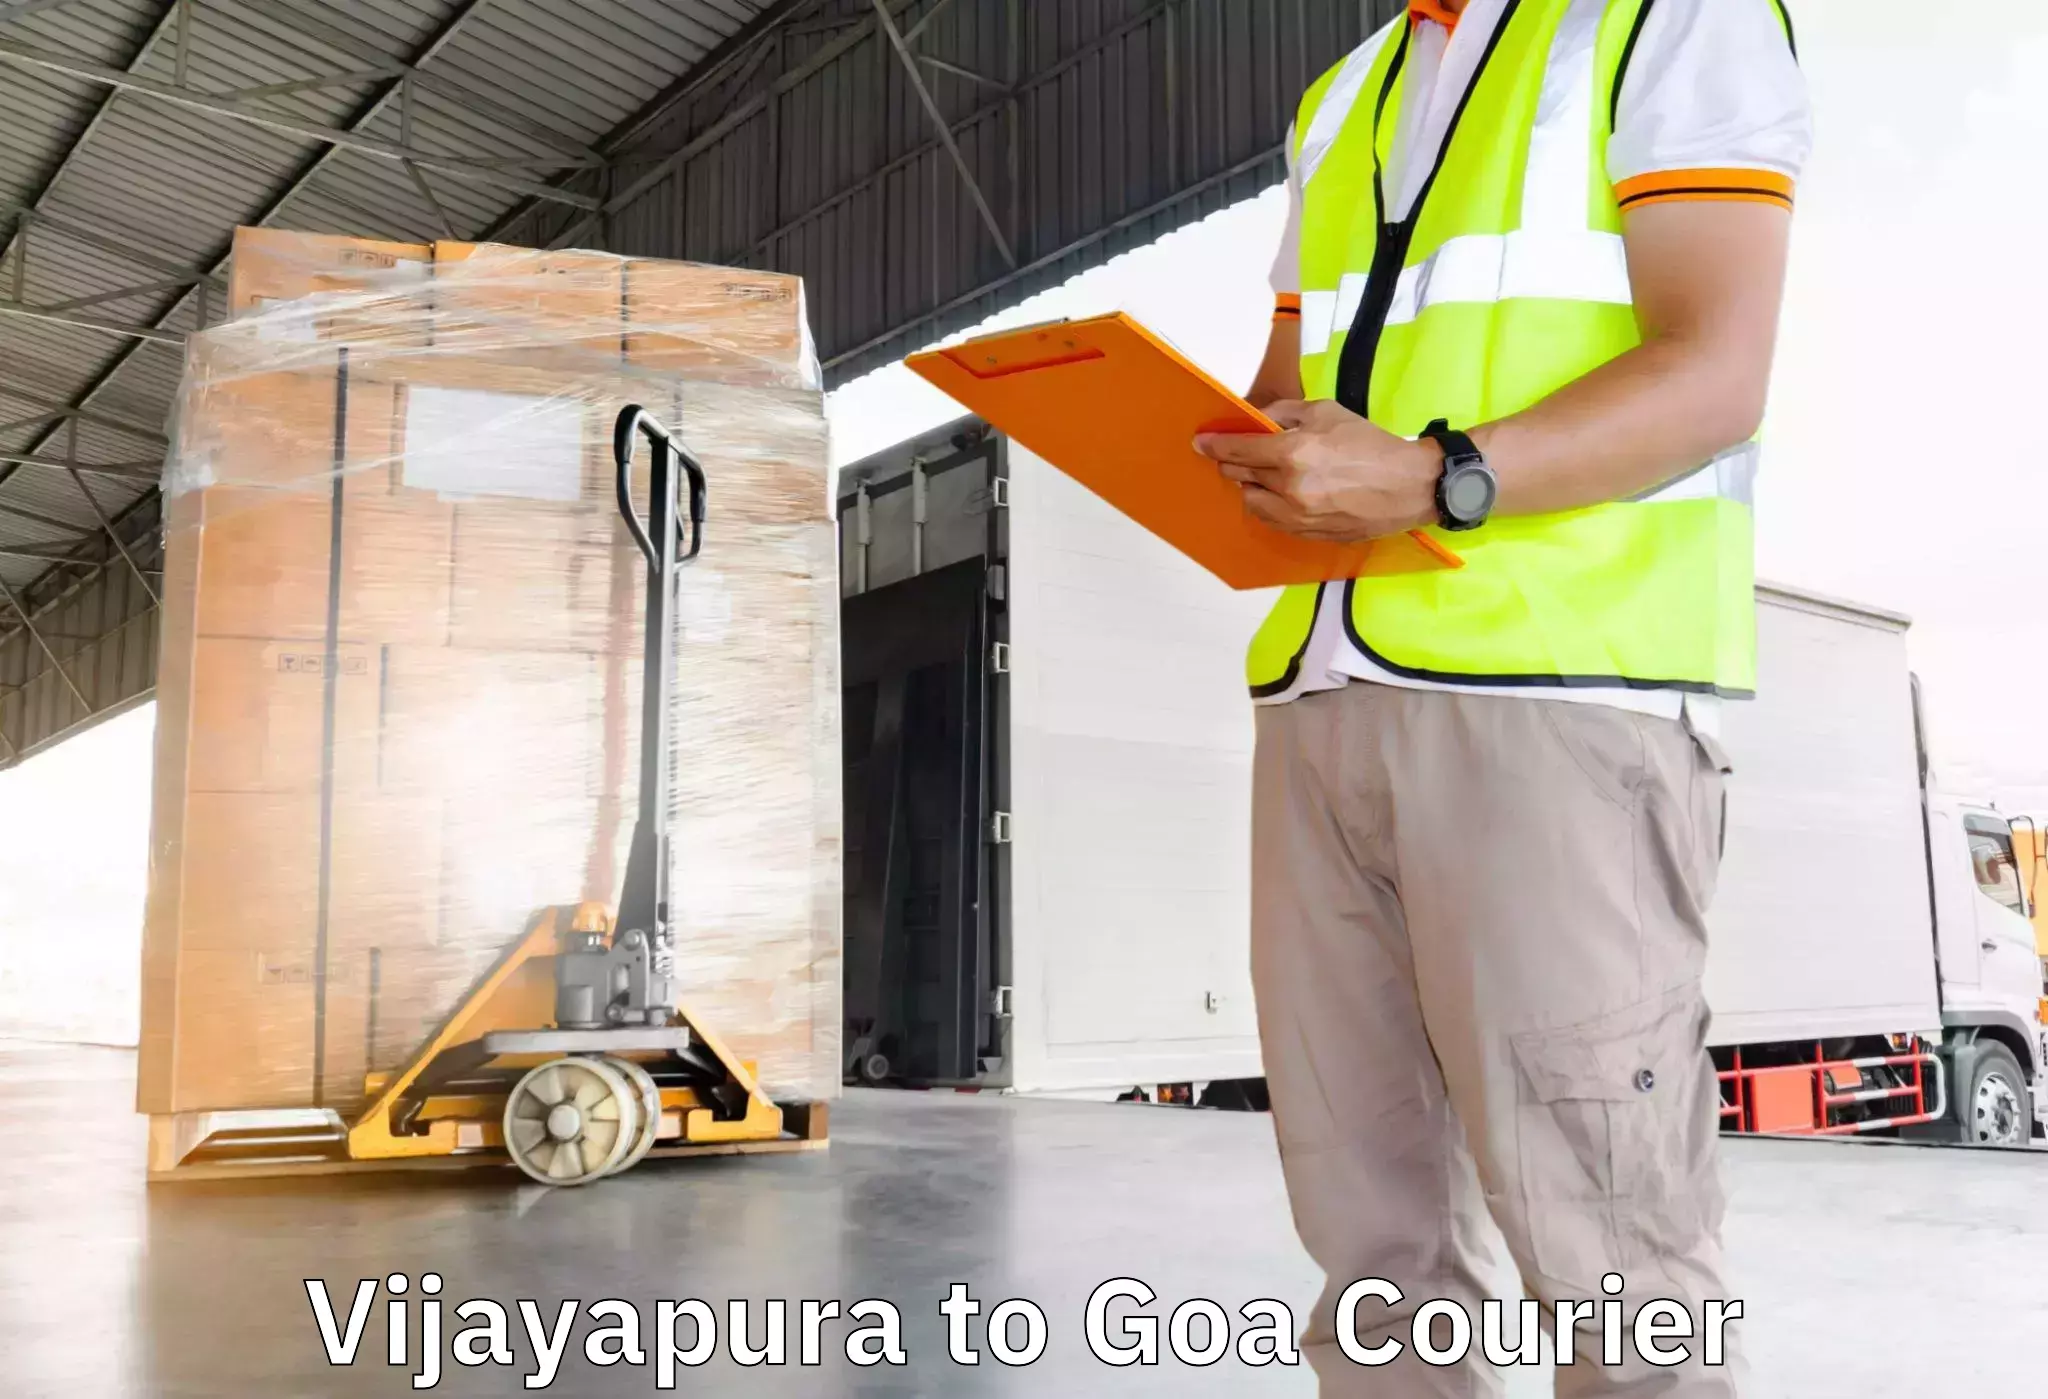 Furniture delivery service Vijayapura to Bardez